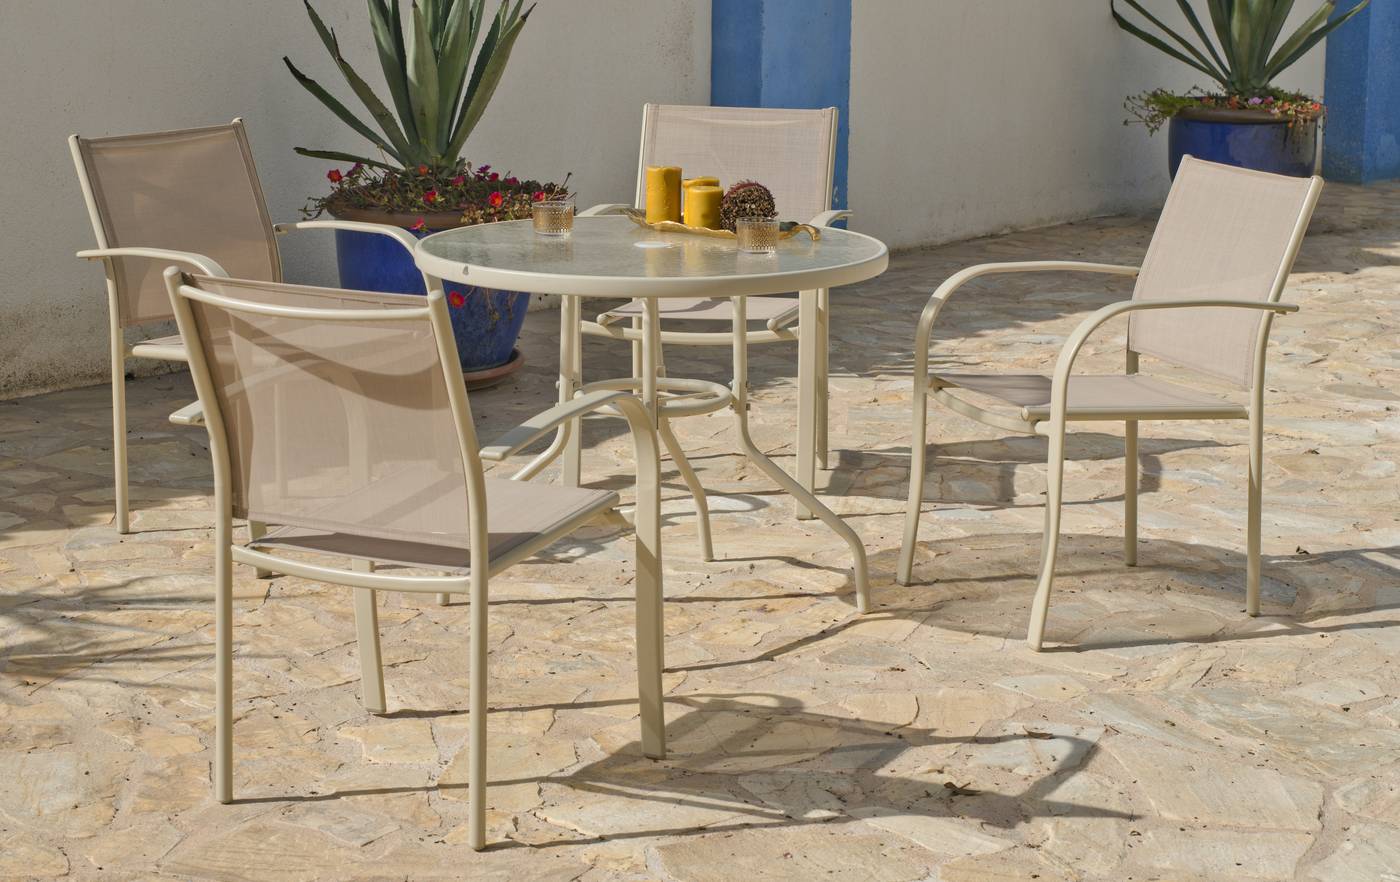 Conjunto de acero color champagne: mesa redonda de 90 cm, con tablero de cristal templado + 4 sillones de acero y textilen